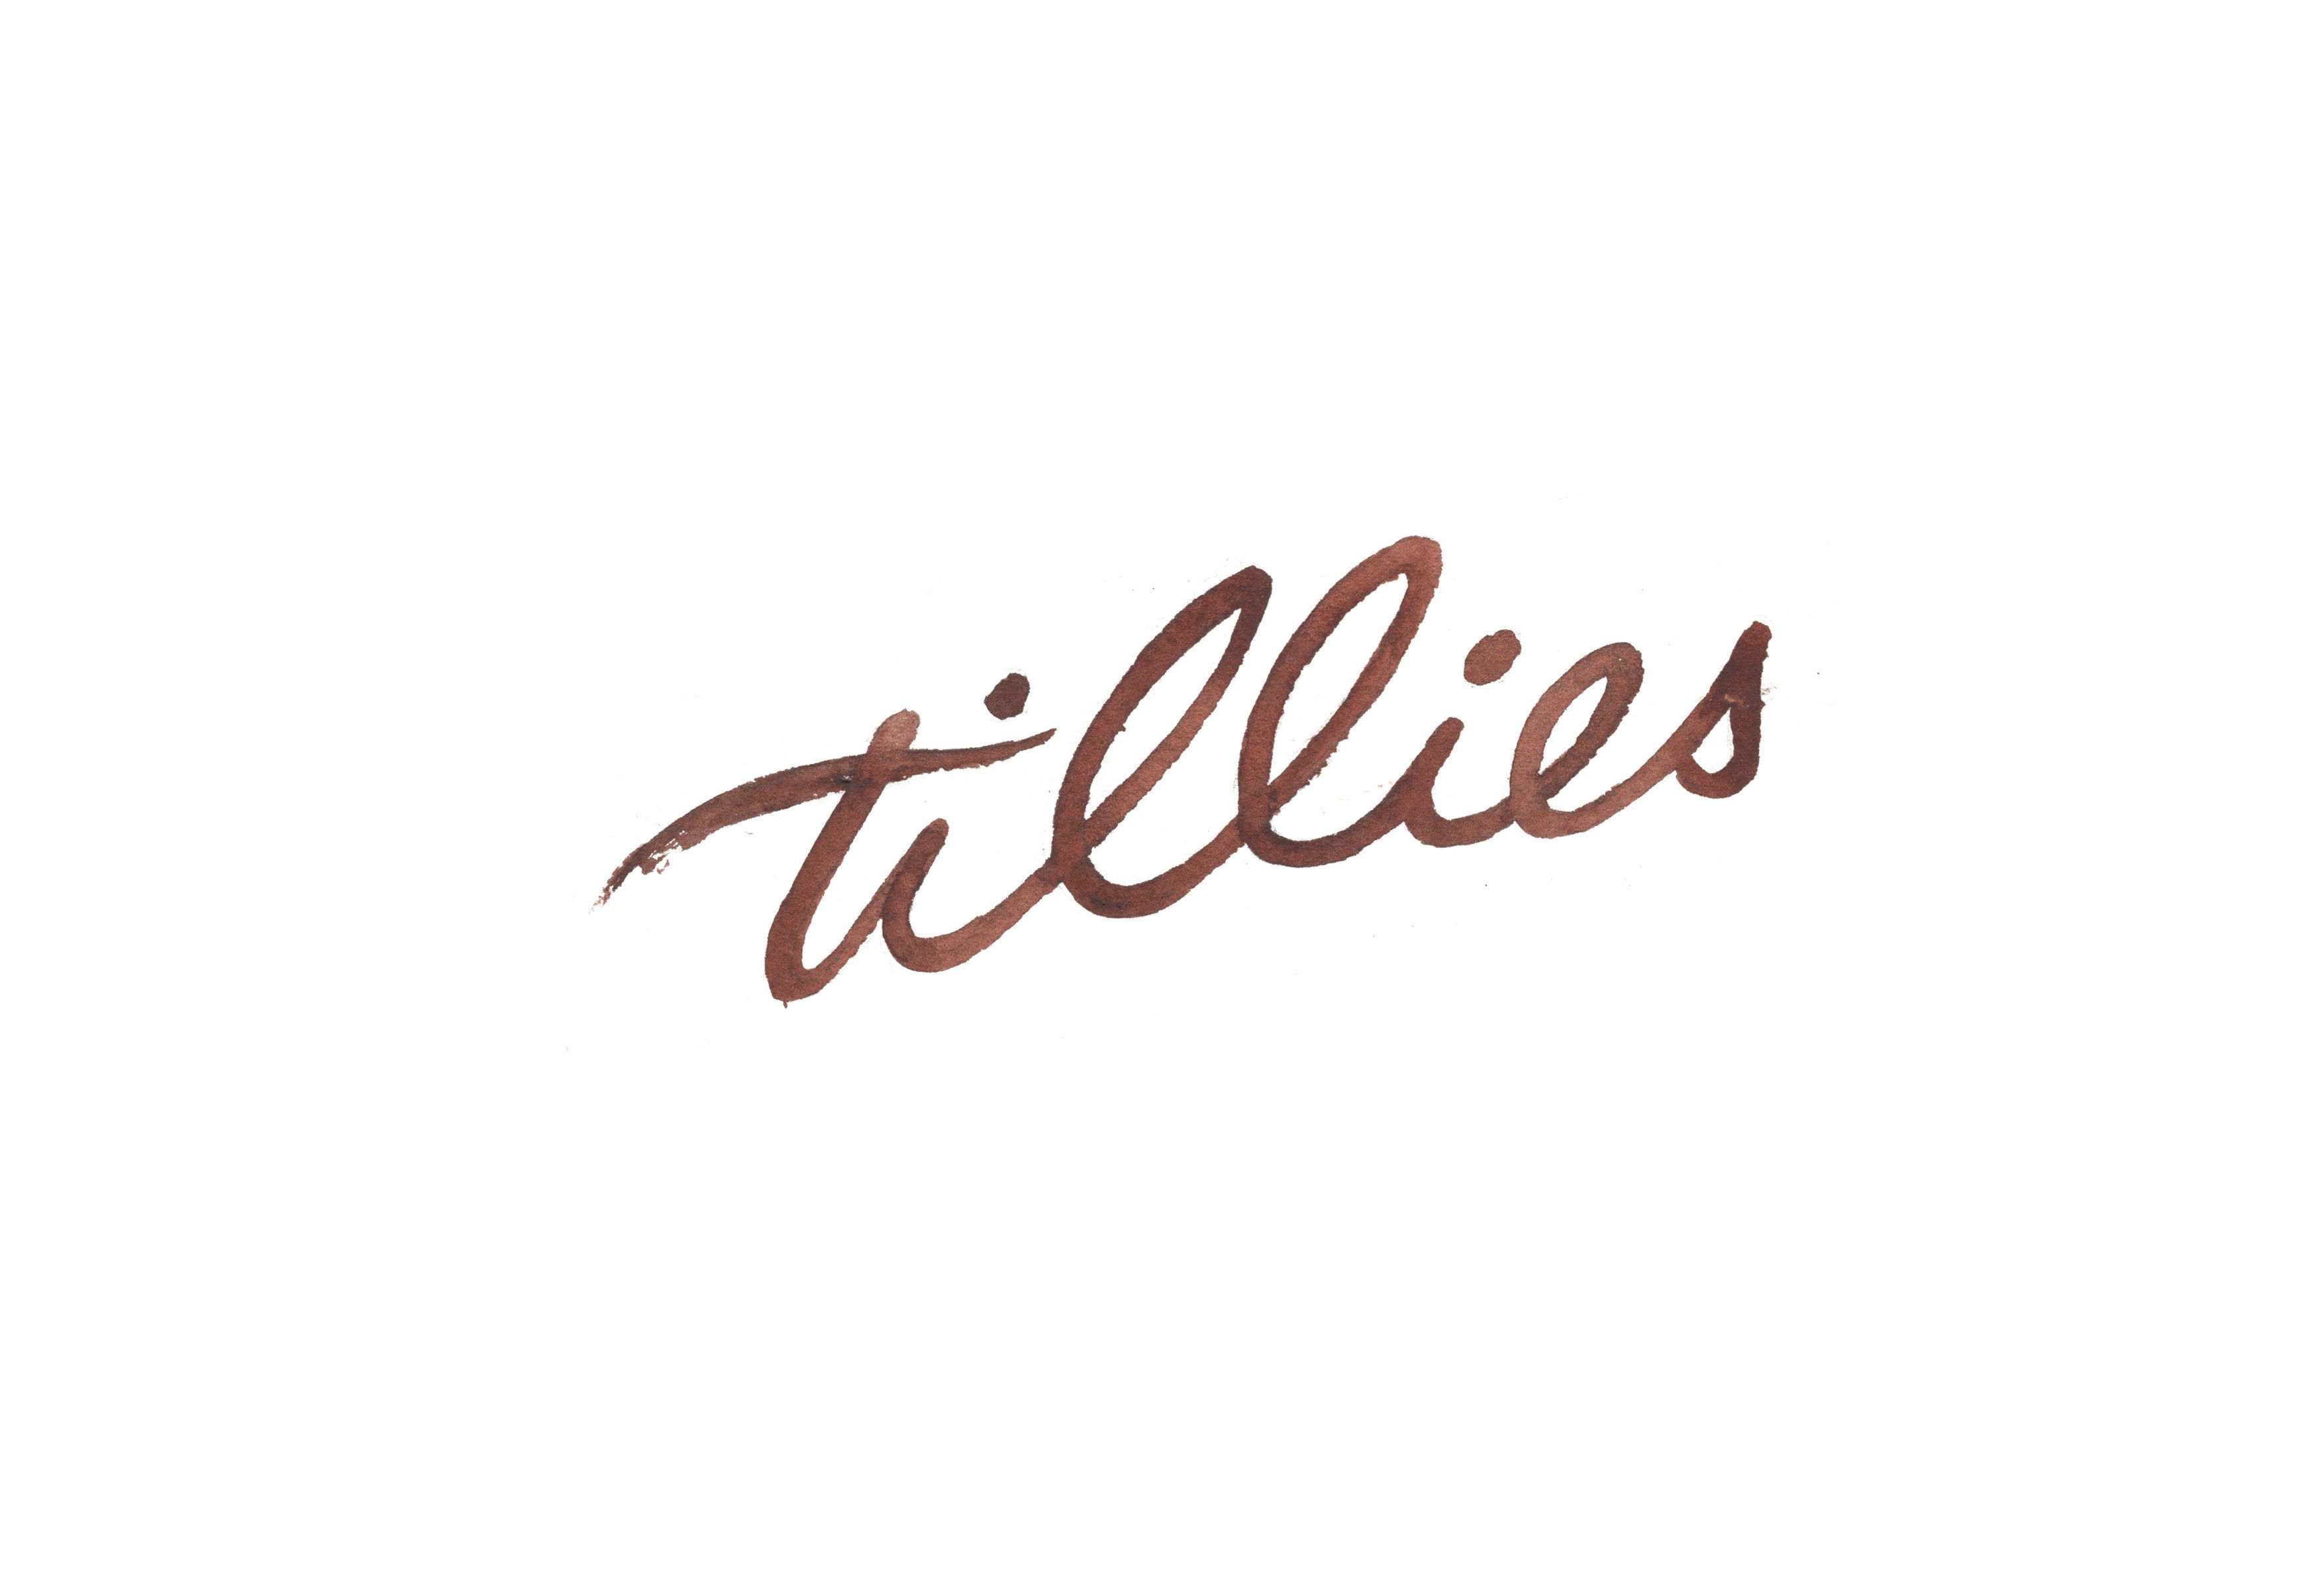 Tillies